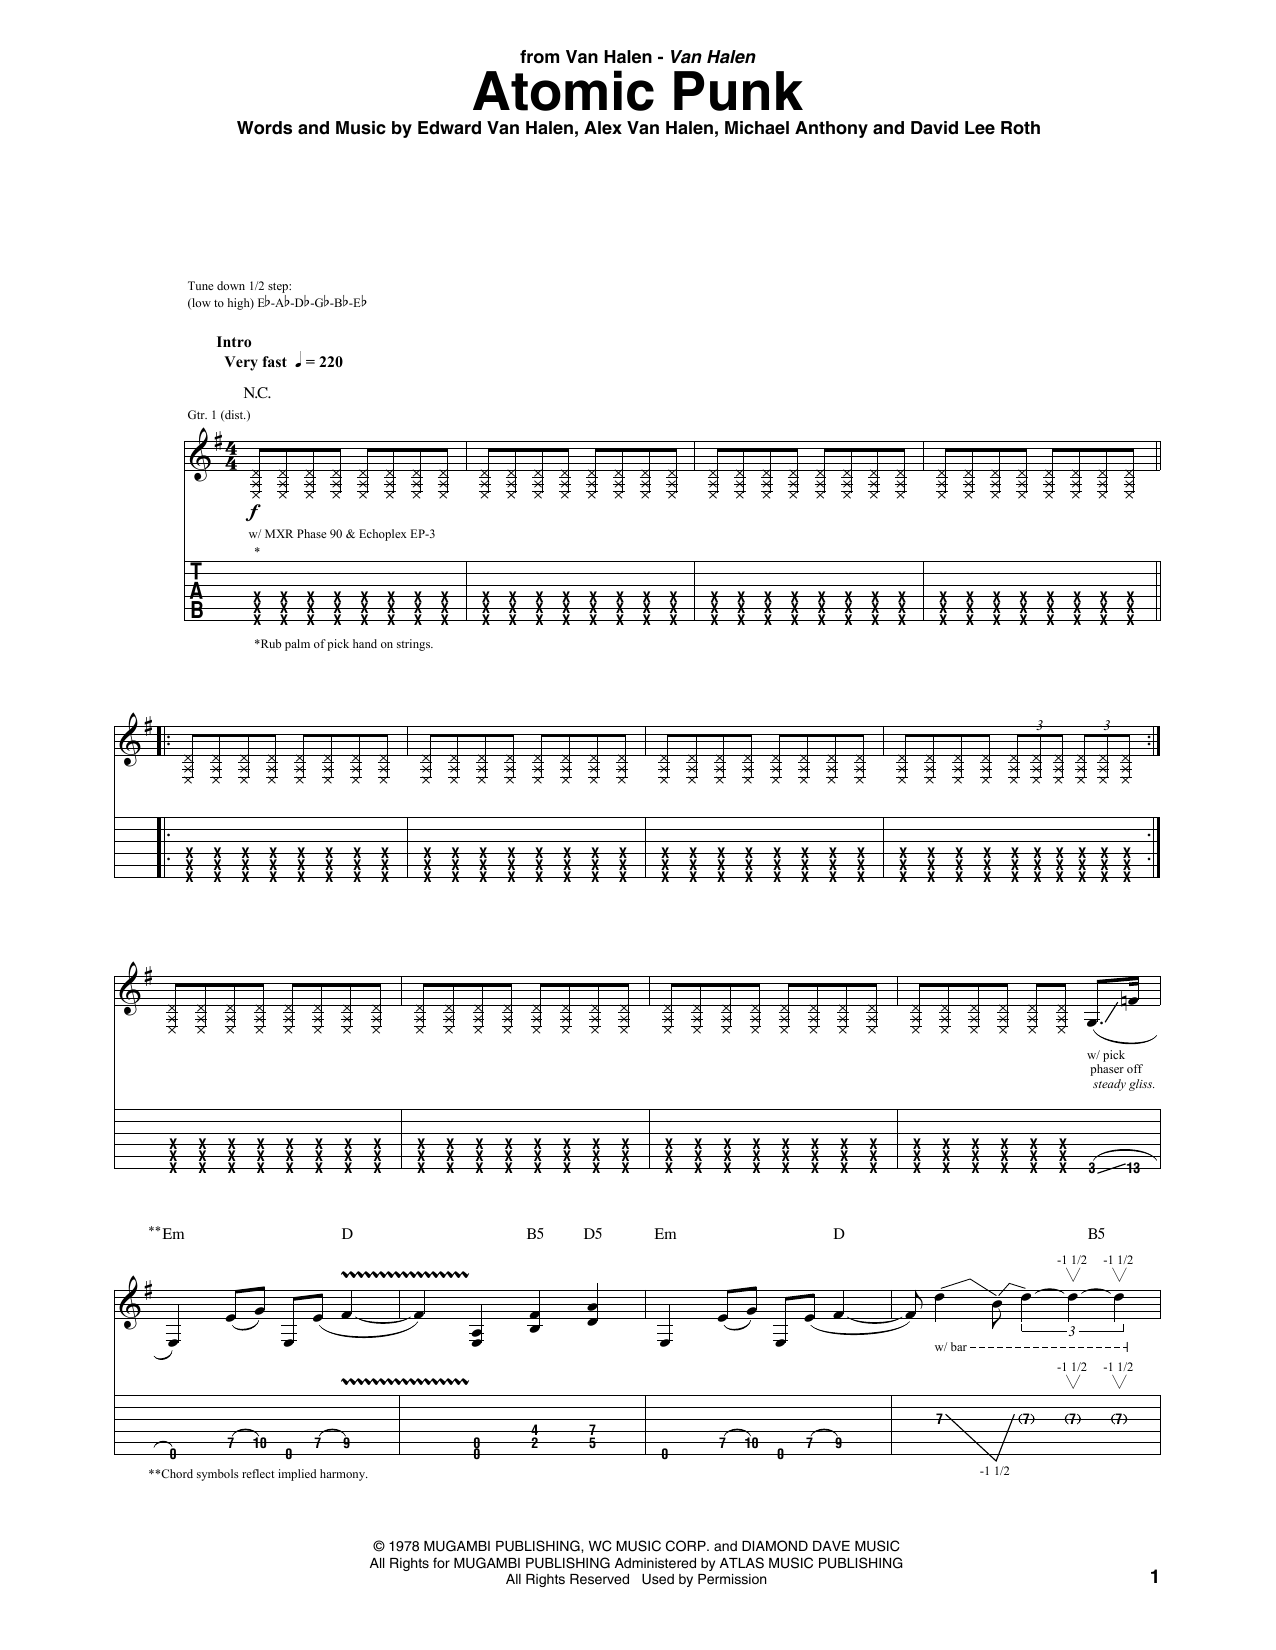 Van Halen Atomic Punk Sheet Music Notes & Chords for Guitar Tab - Download or Print PDF